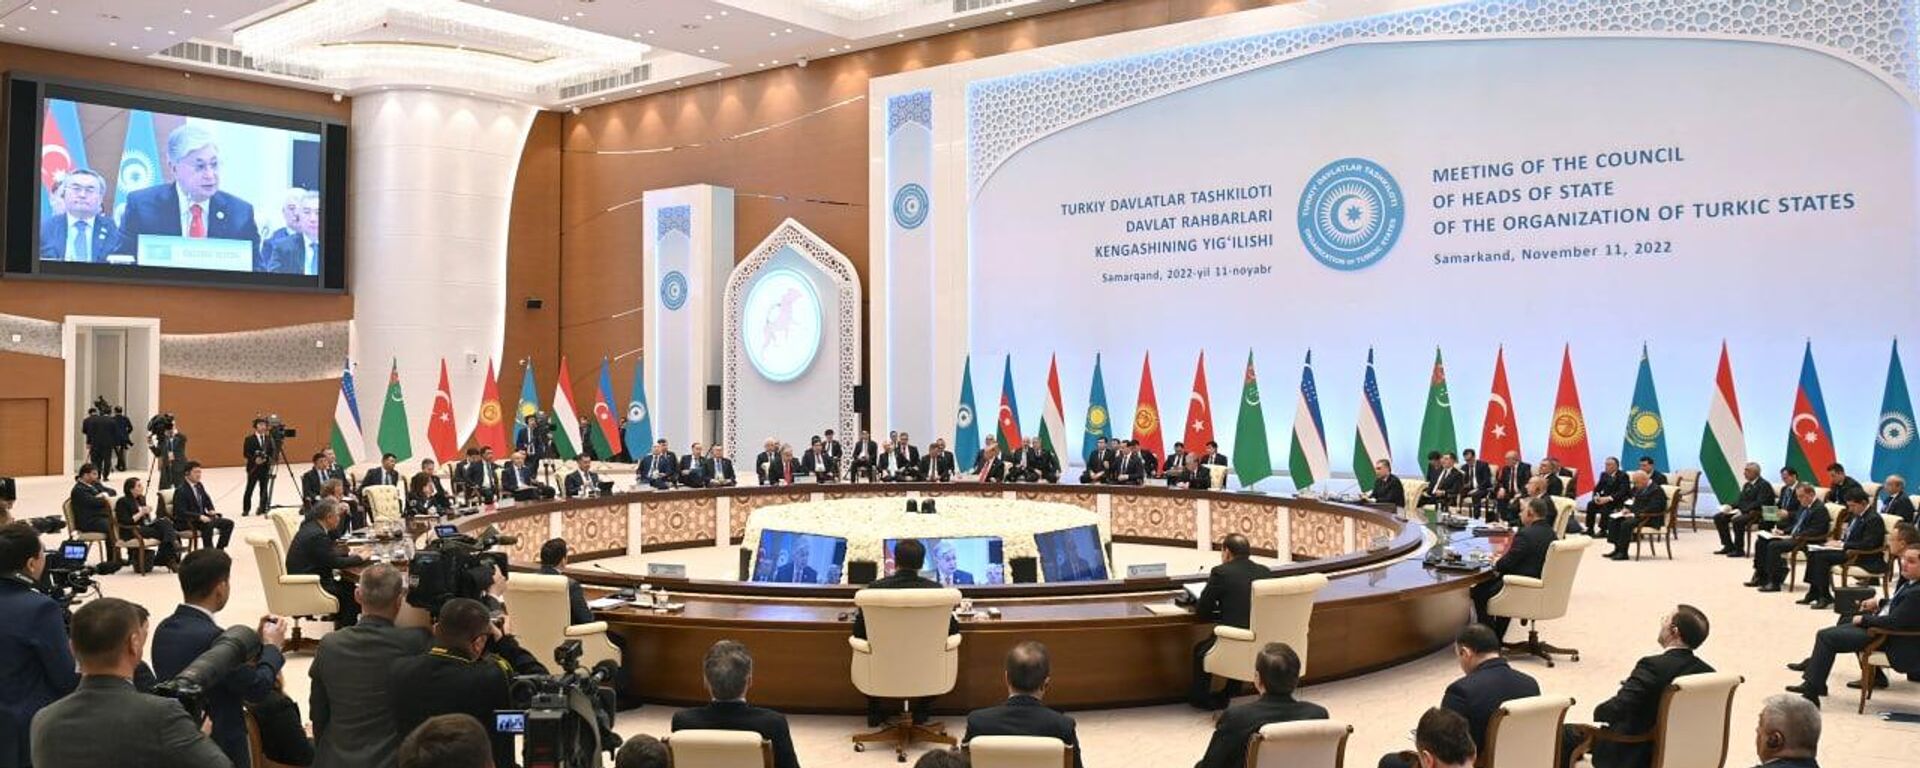 Саммит Организации тюркских государств проходит в Самарканде  - Sputnik Казахстан, 1920, 11.11.2022